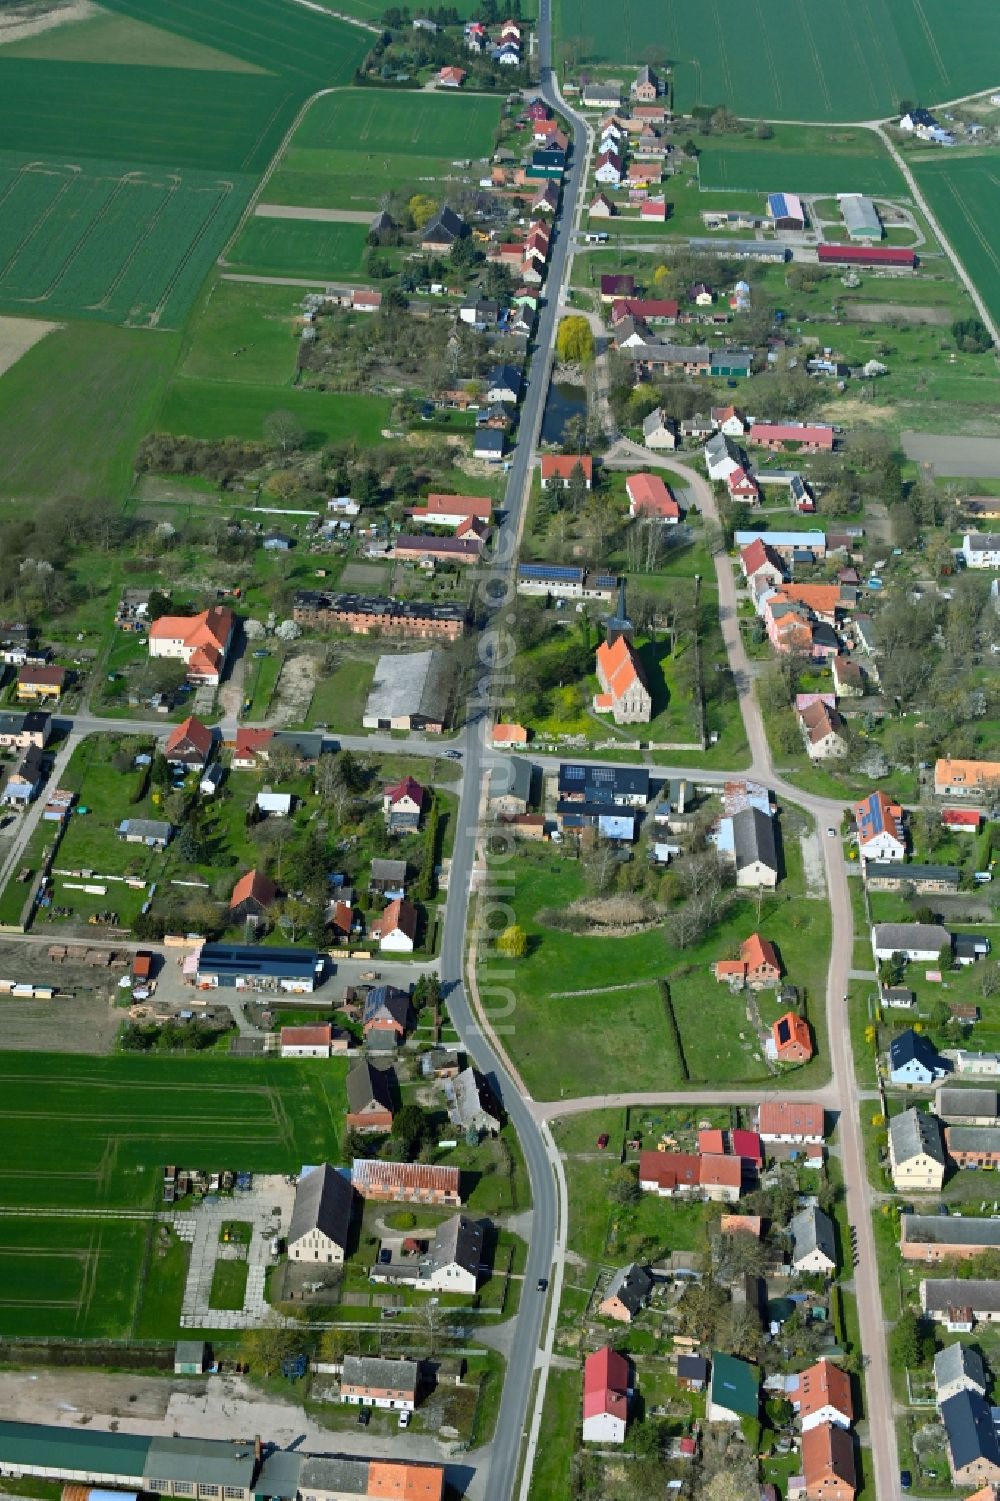 Luftbild Hohenselchow - Ortsansicht am Rande von landwirtschaftlichen Feldern in Hohenselchow im Bundesland Brandenburg, Deutschland